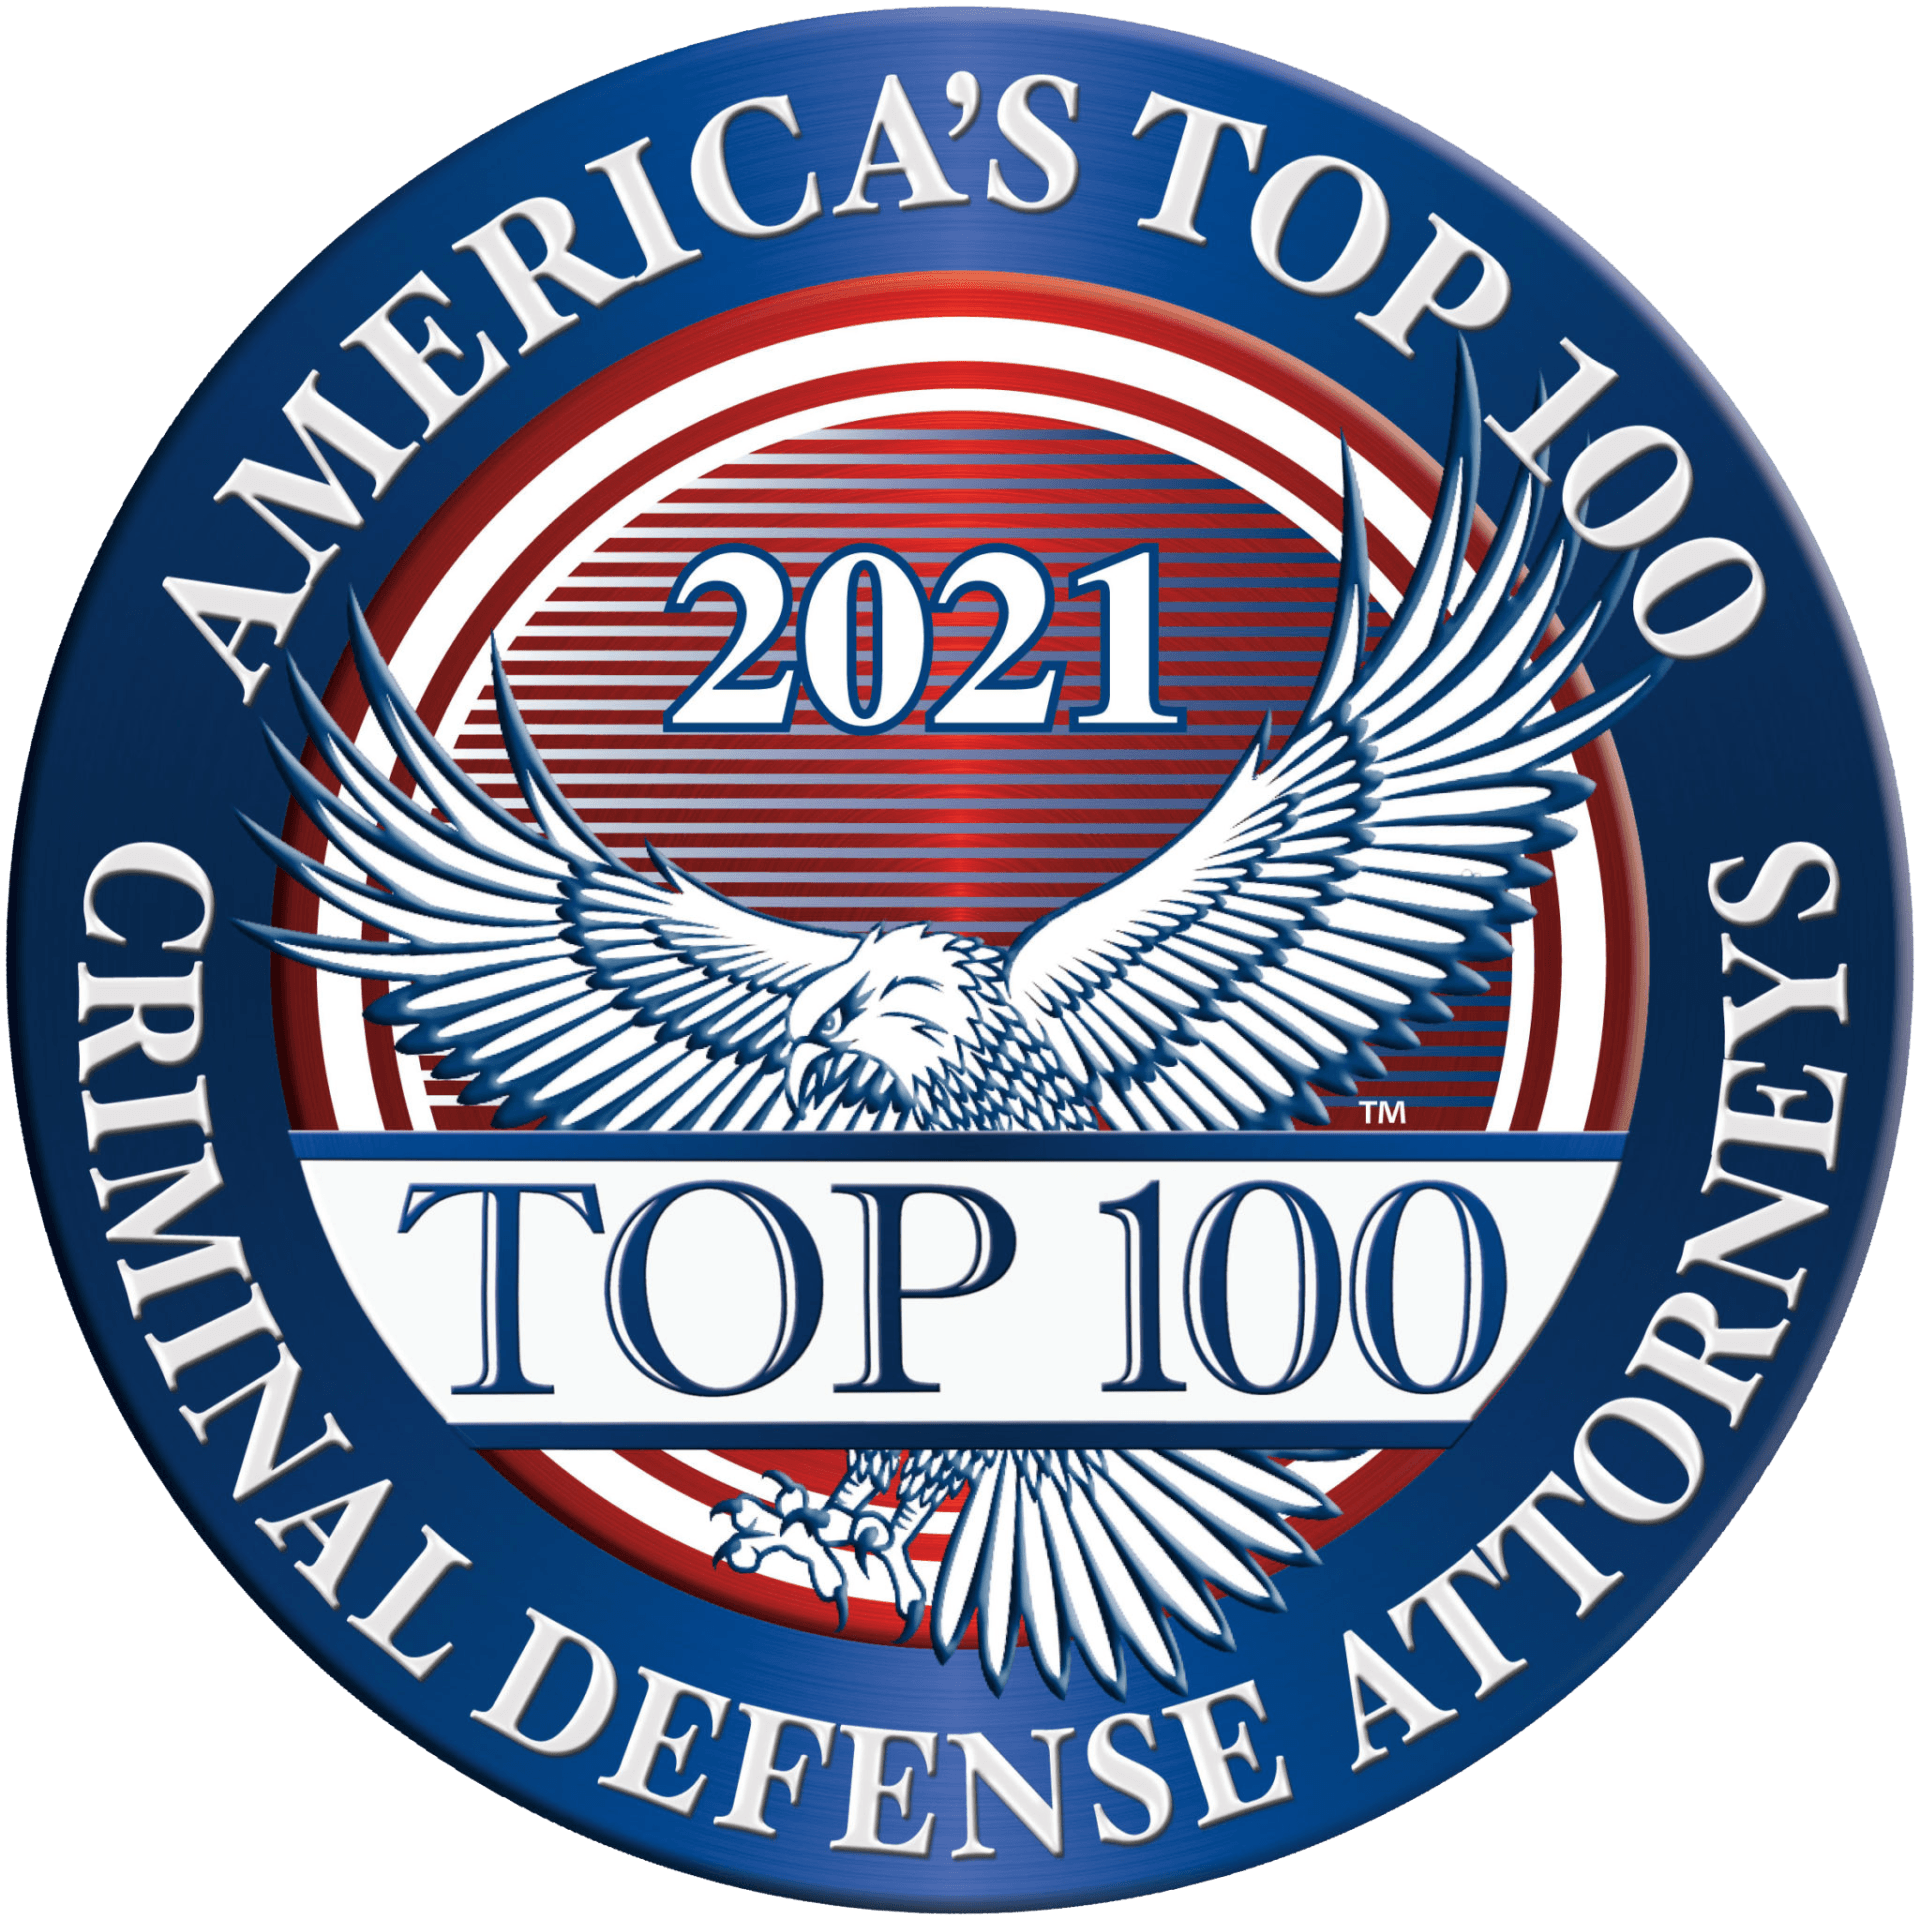 America's Top 100 Criminal Defense Attorneys